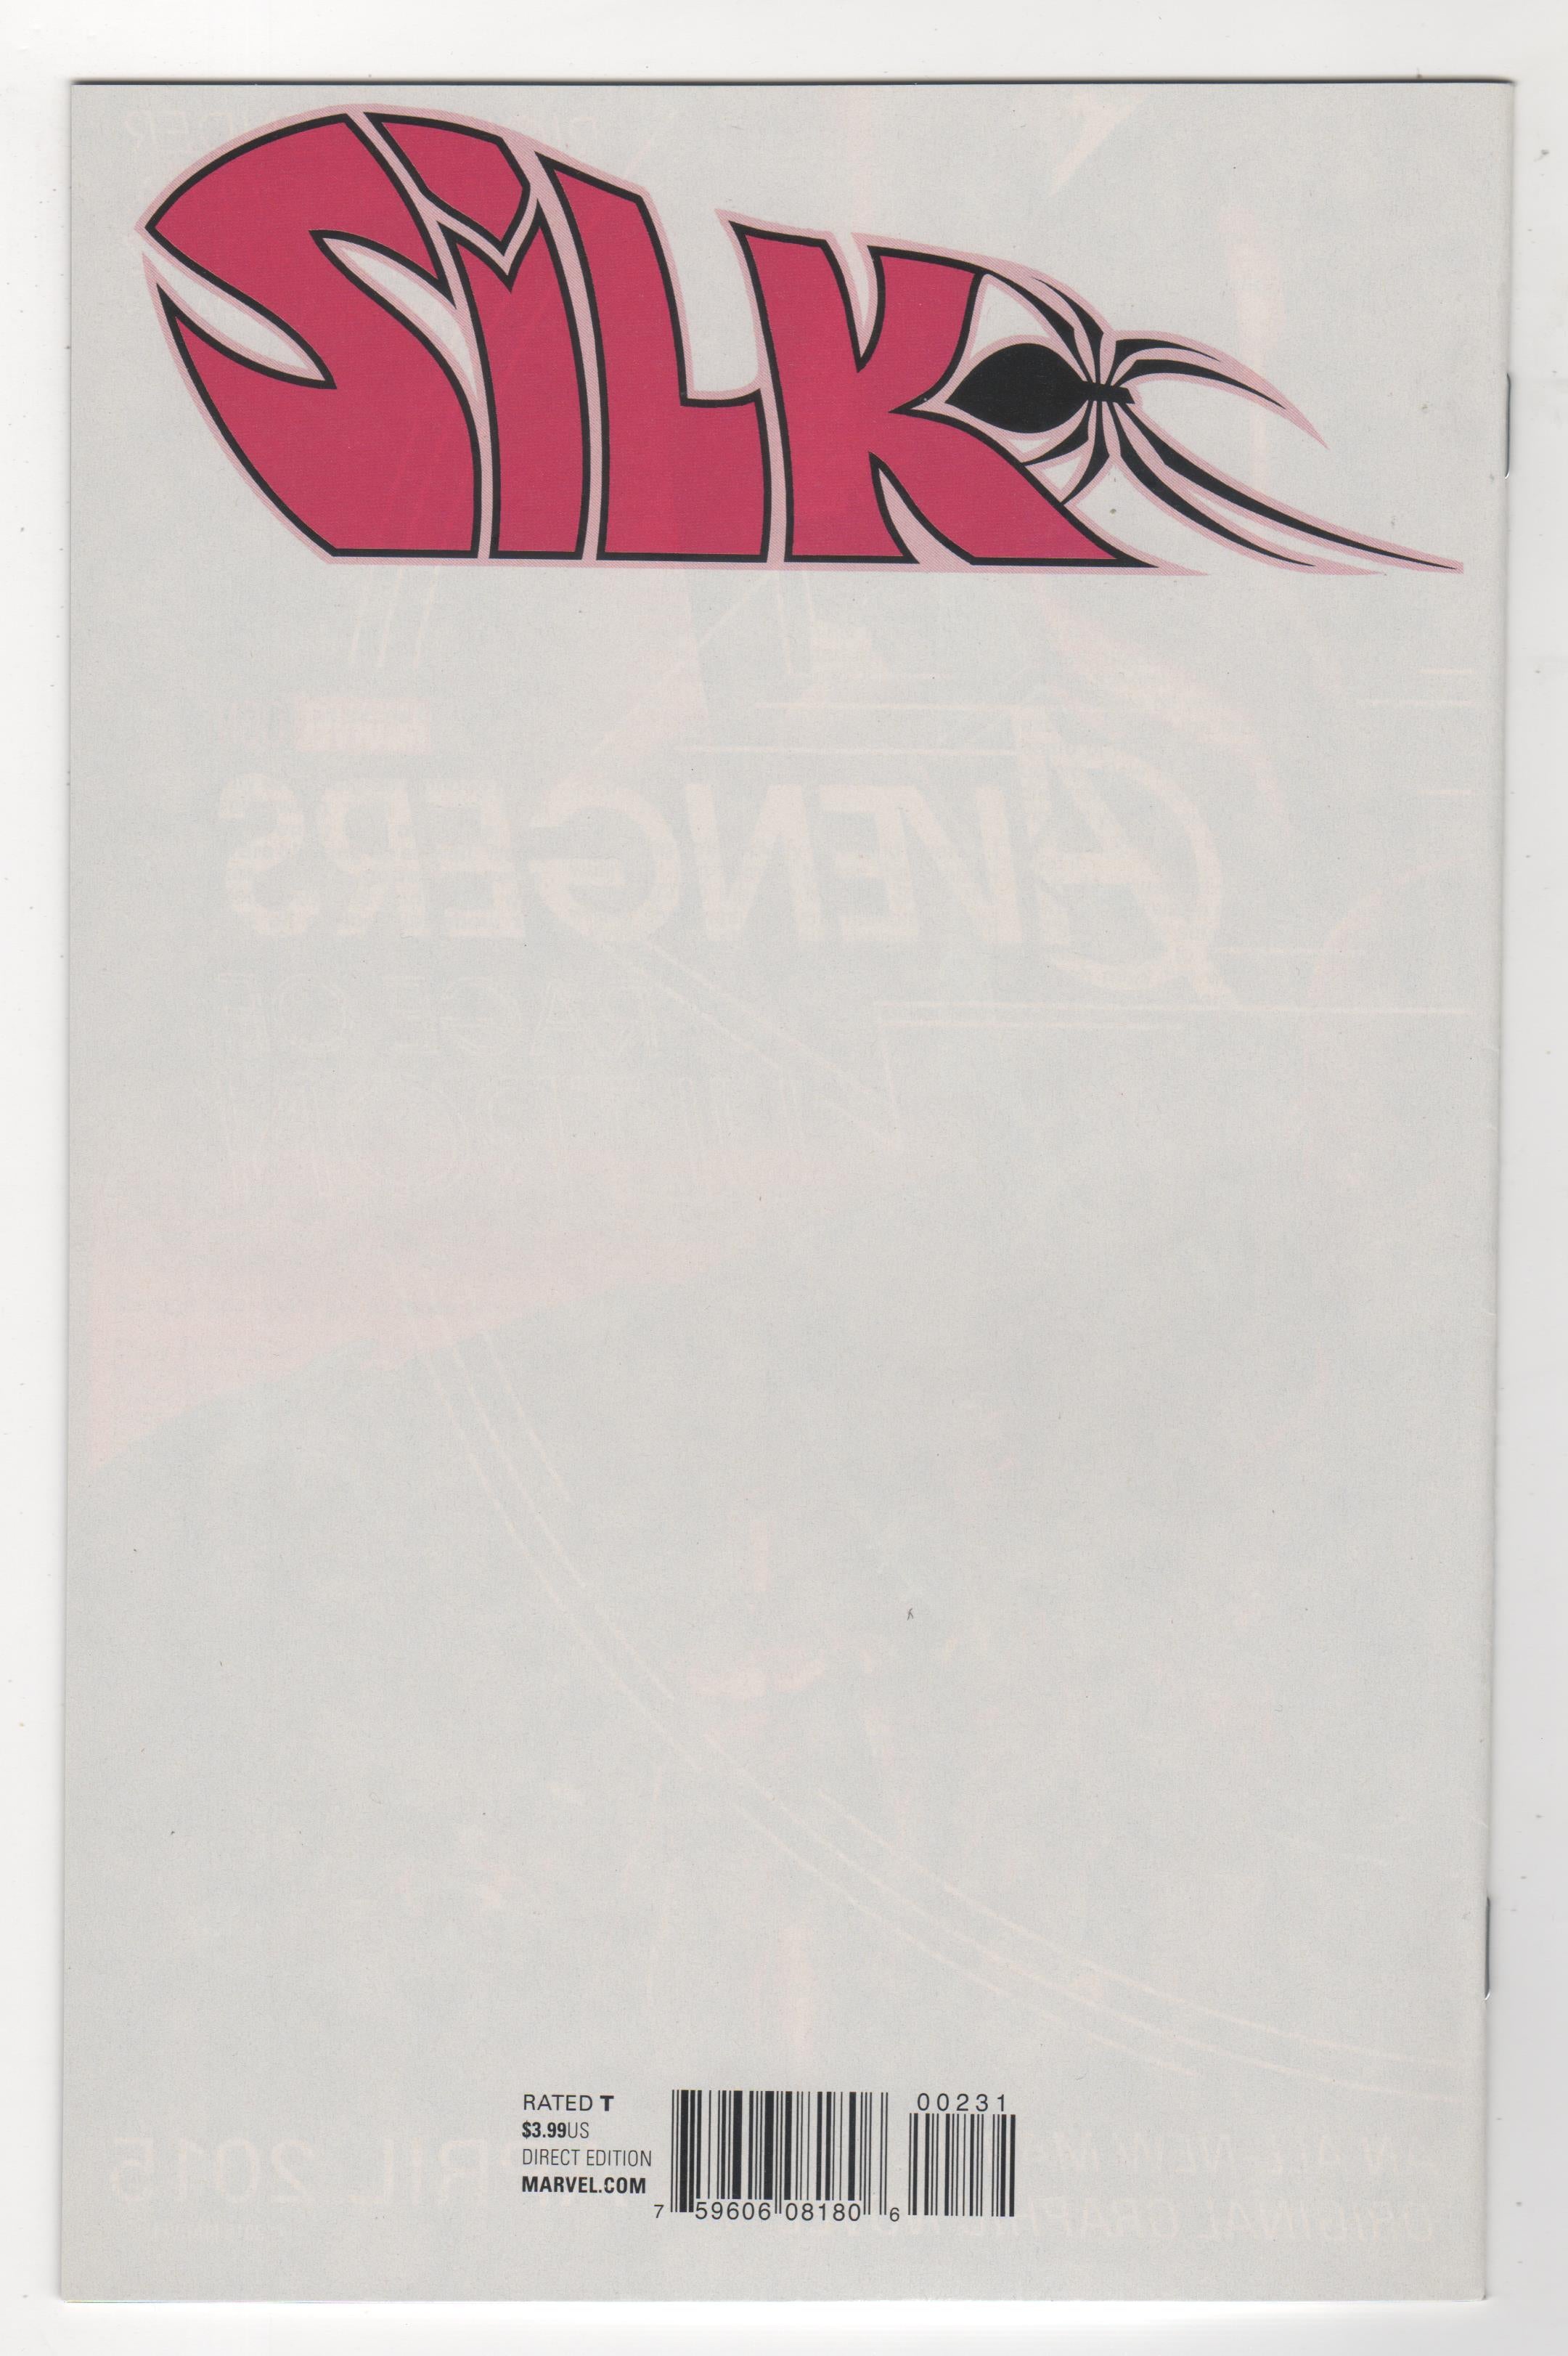 Silk #002 Phantom Variant Spider-Man #300 Marvel Comics 2015